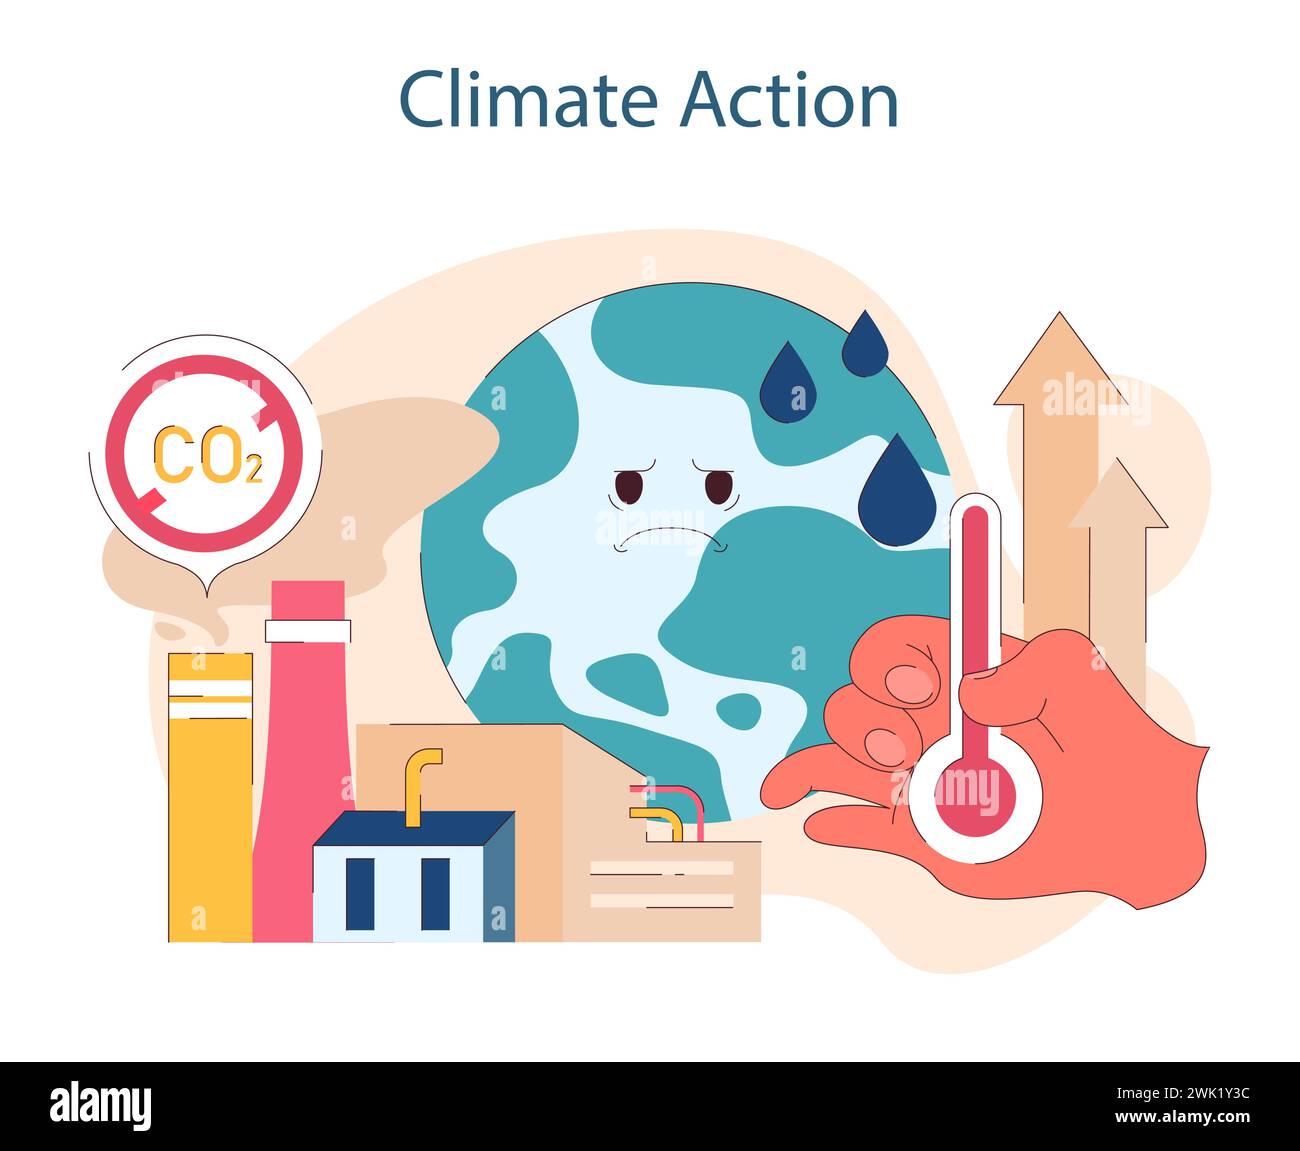 Klimaschutz. Bekämpfung der globalen Erwärmung durch Emissionsminderung und nachhaltige Praktiken. Für einen kühleren Planeten eintreten. Illustration des flachen Vektors Stock Vektor